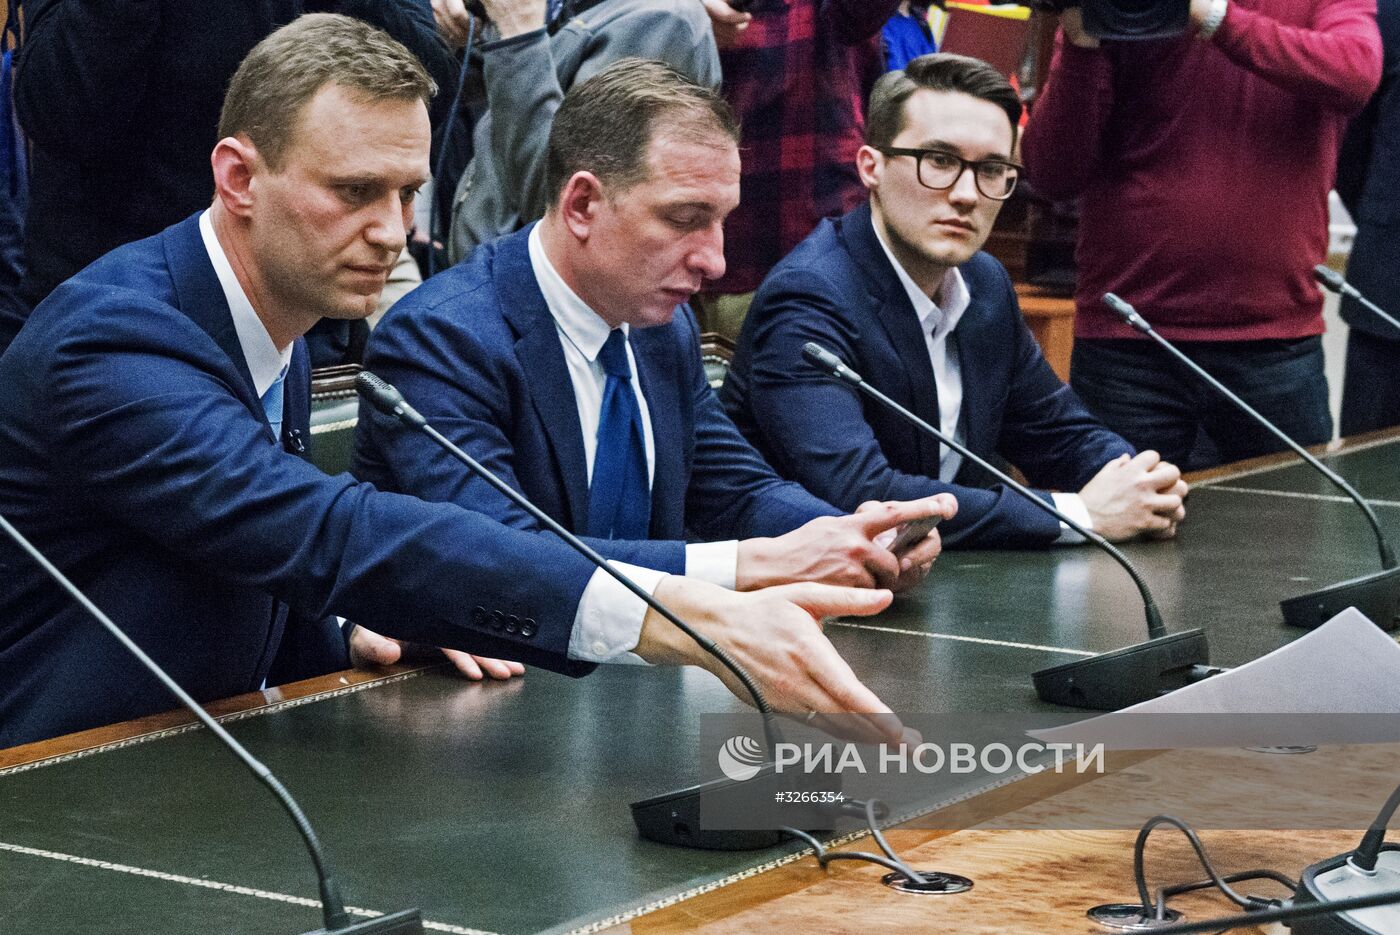 А. Навальный подал документы в ЦИК на регистрацию